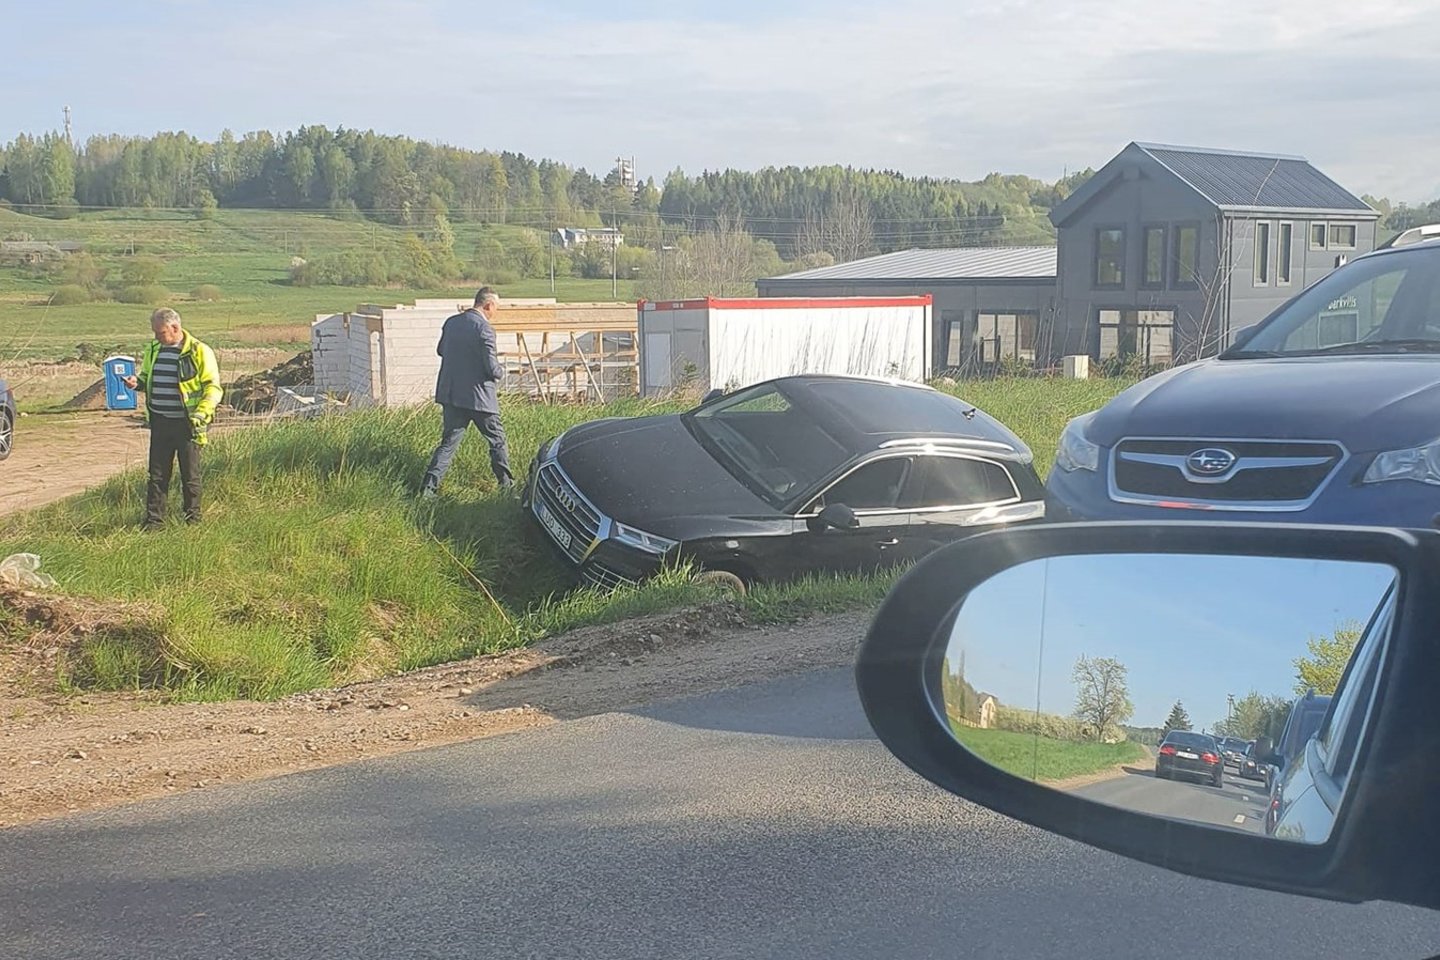  Greta Vilniaus nuo kelio nuvažiavo „Audi“, prireikė medikų.<br> Facebook/Reidas Vilniuje/Roberto J. nuotr.